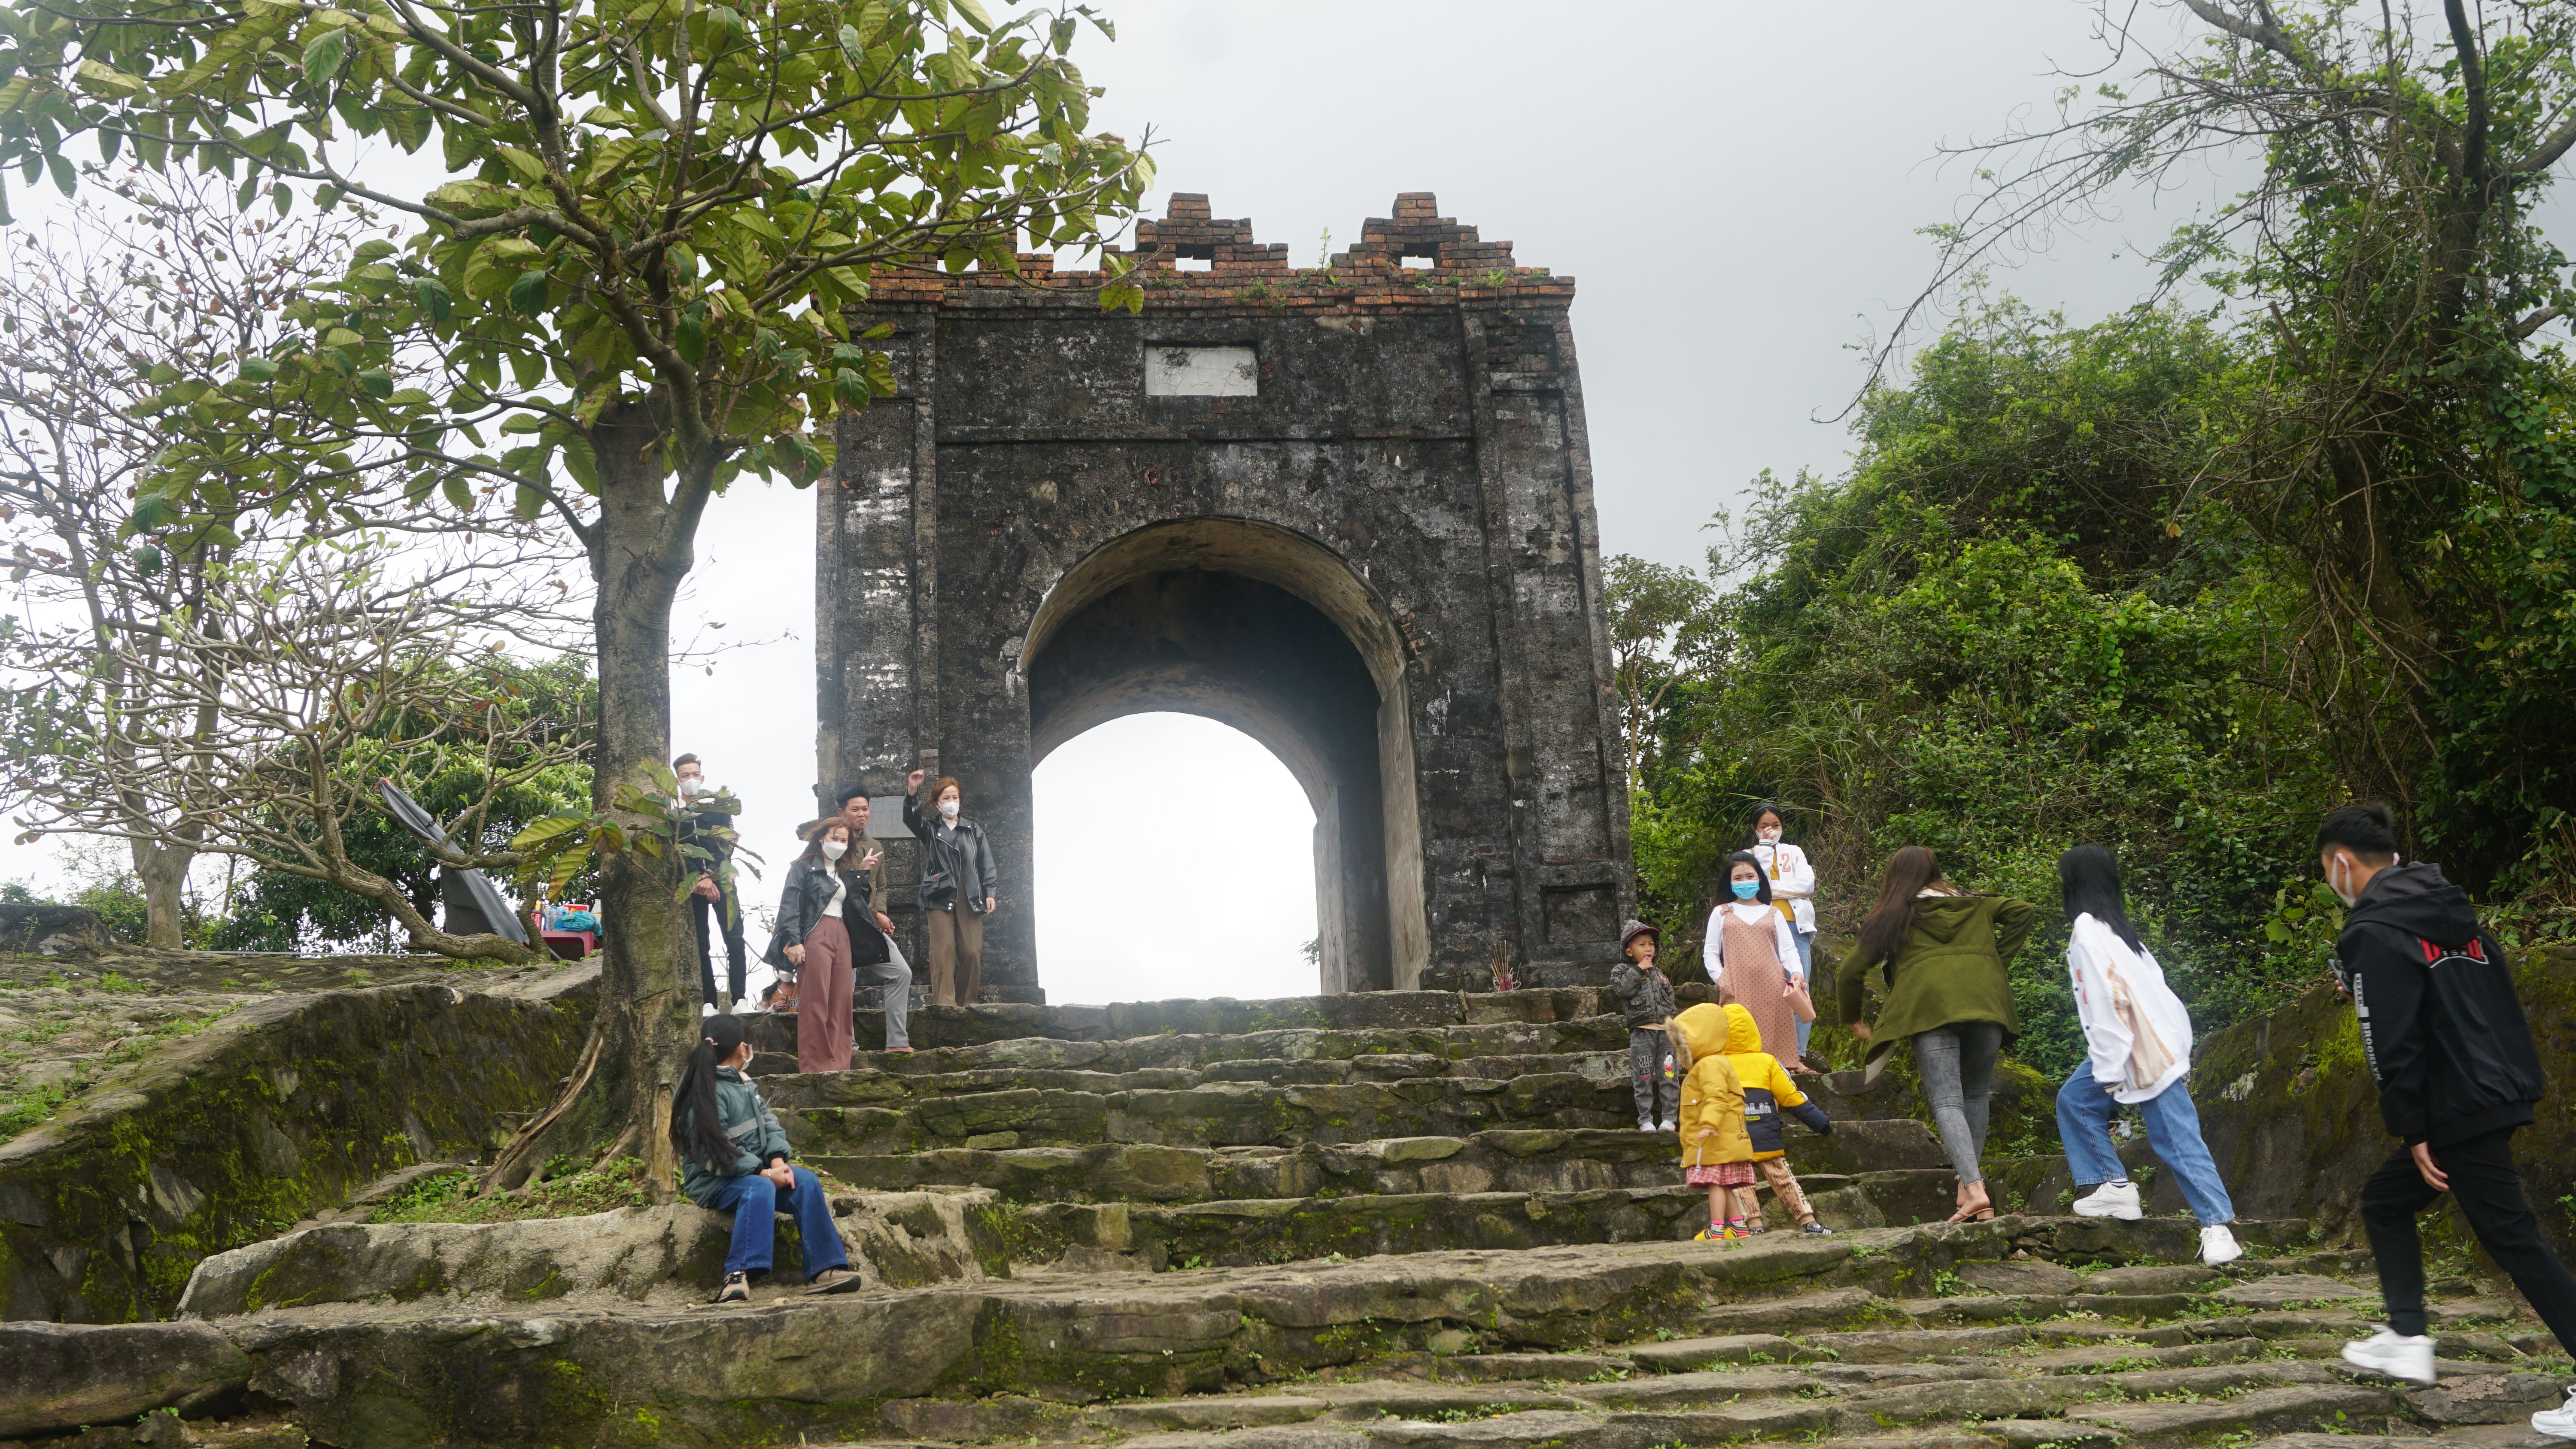 Cùng với đền Thánh Mẫu Liễu Hạnh, Hoành Sơn Quan cũng là một điểm viếng thăm đầu năm mới được nhiều người lựa chọn.